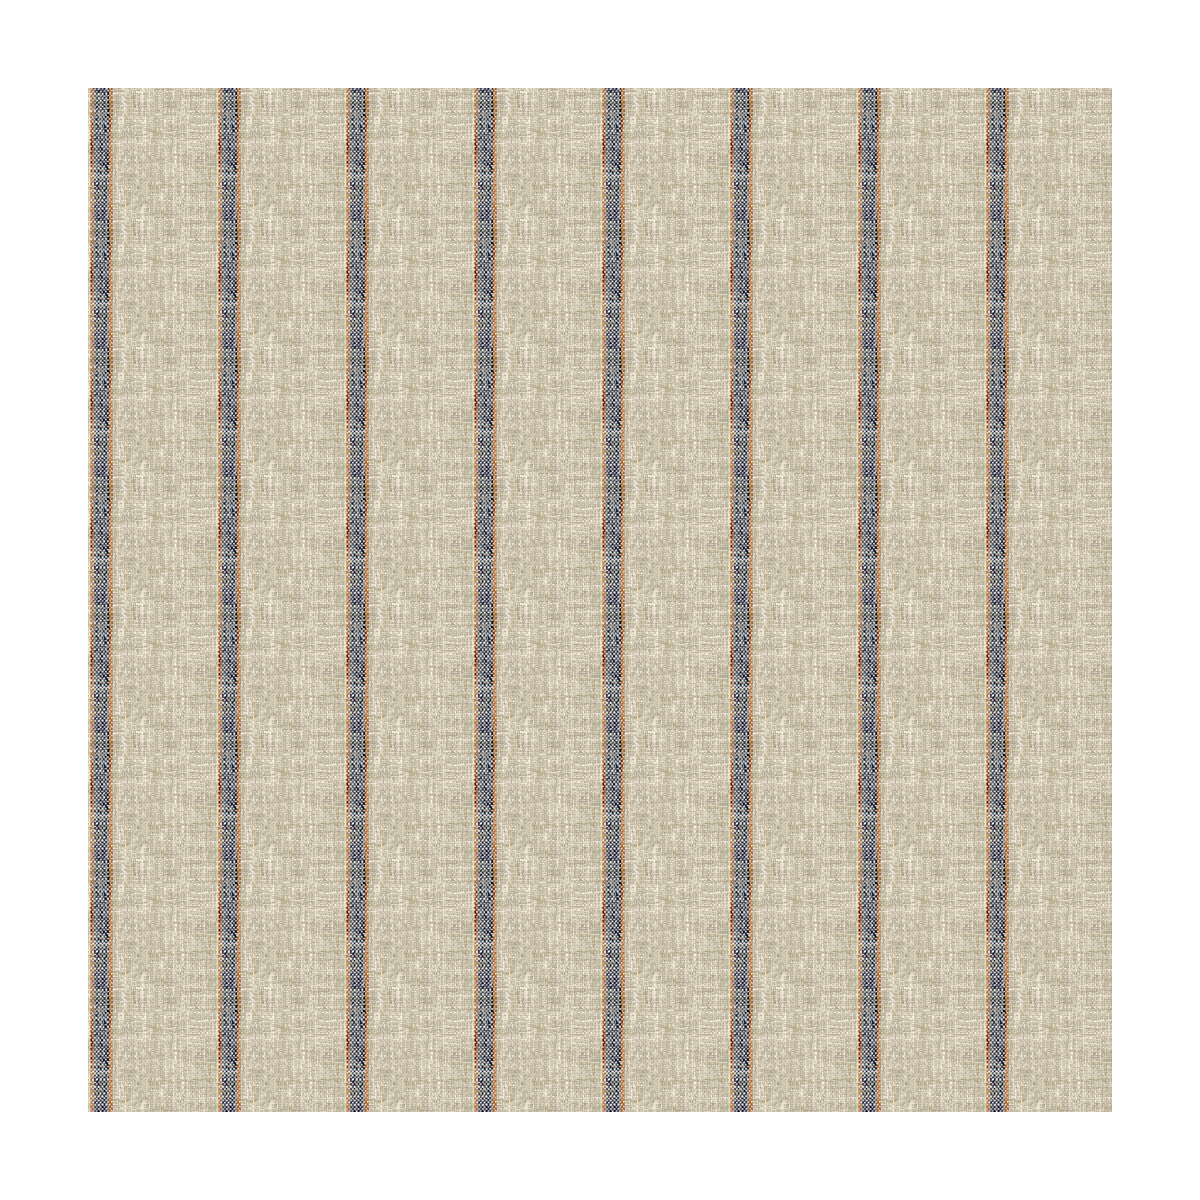 Kravet Basics fabric in 34087-516 color - pattern 34087.516.0 - by Kravet Basics